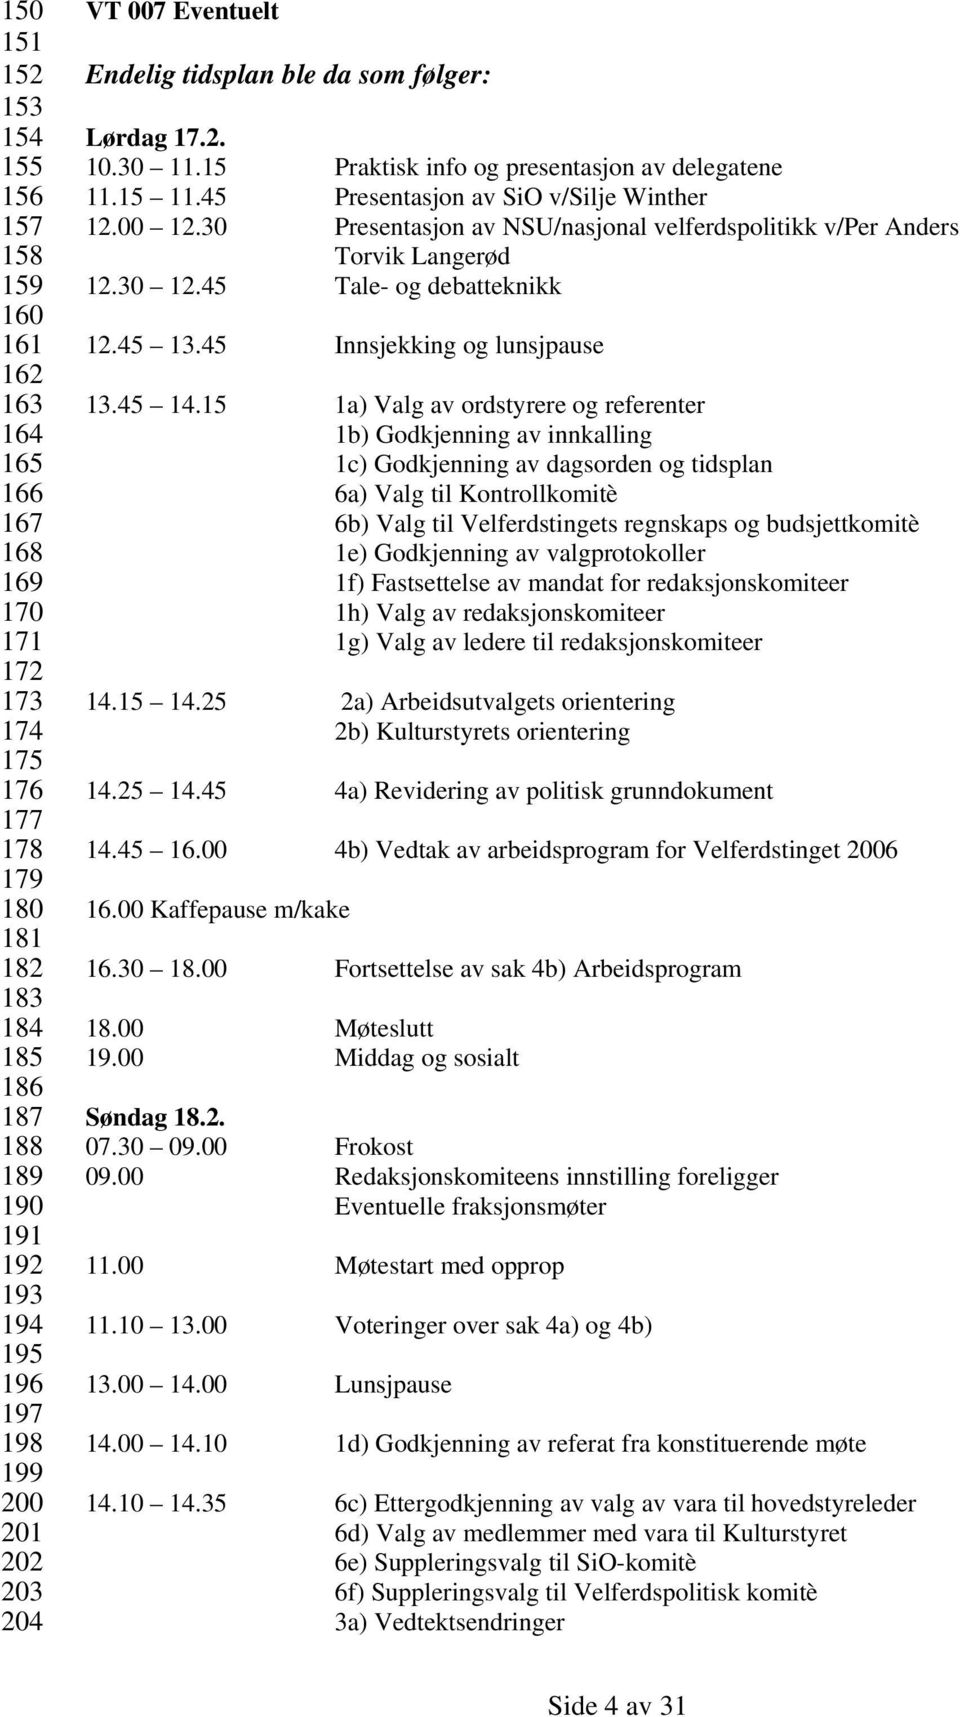 30 Presentasjon av NSU/nasjonal velferdspolitikk v/per Anders Torvik Langerød 12.30 12.45 Tale- og debatteknikk 12.45 13.45 Innsjekking og lunsjpause 13.45 14.